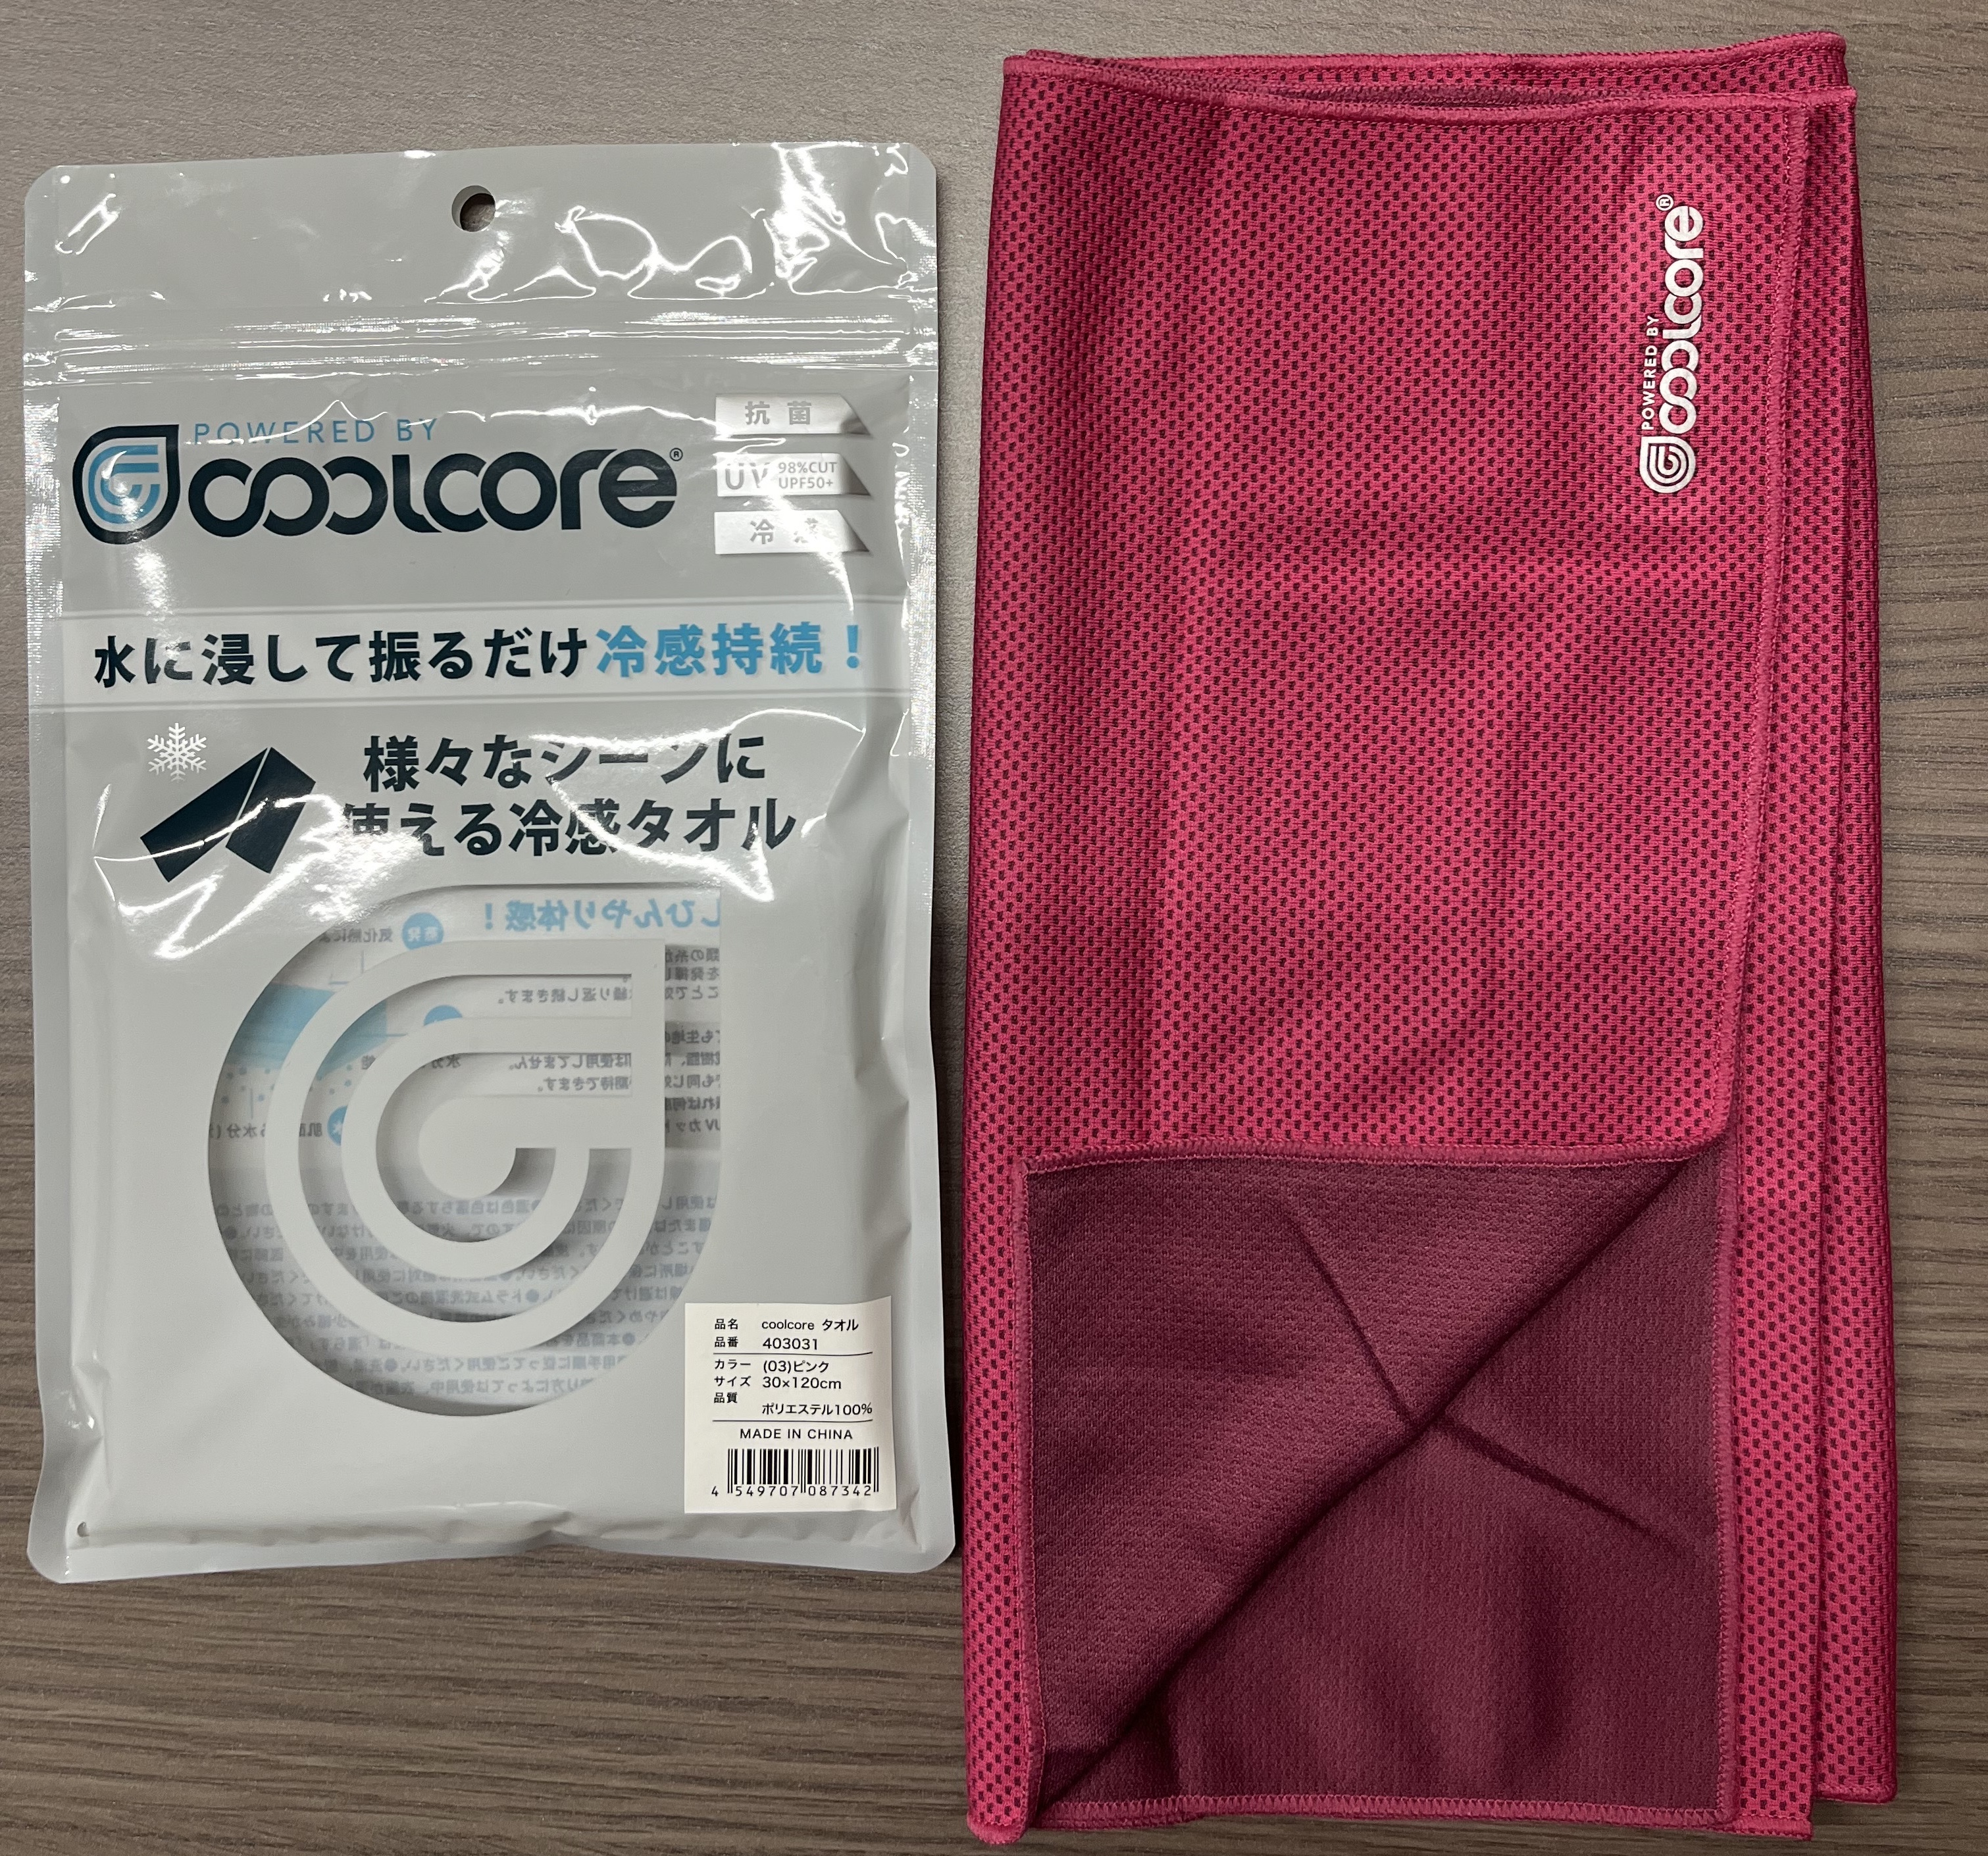 Coolcore(クールコア) 冷感メカニズム スポーツタオル ピンク 30cm×120cm　80枚セット　参考上代1800円